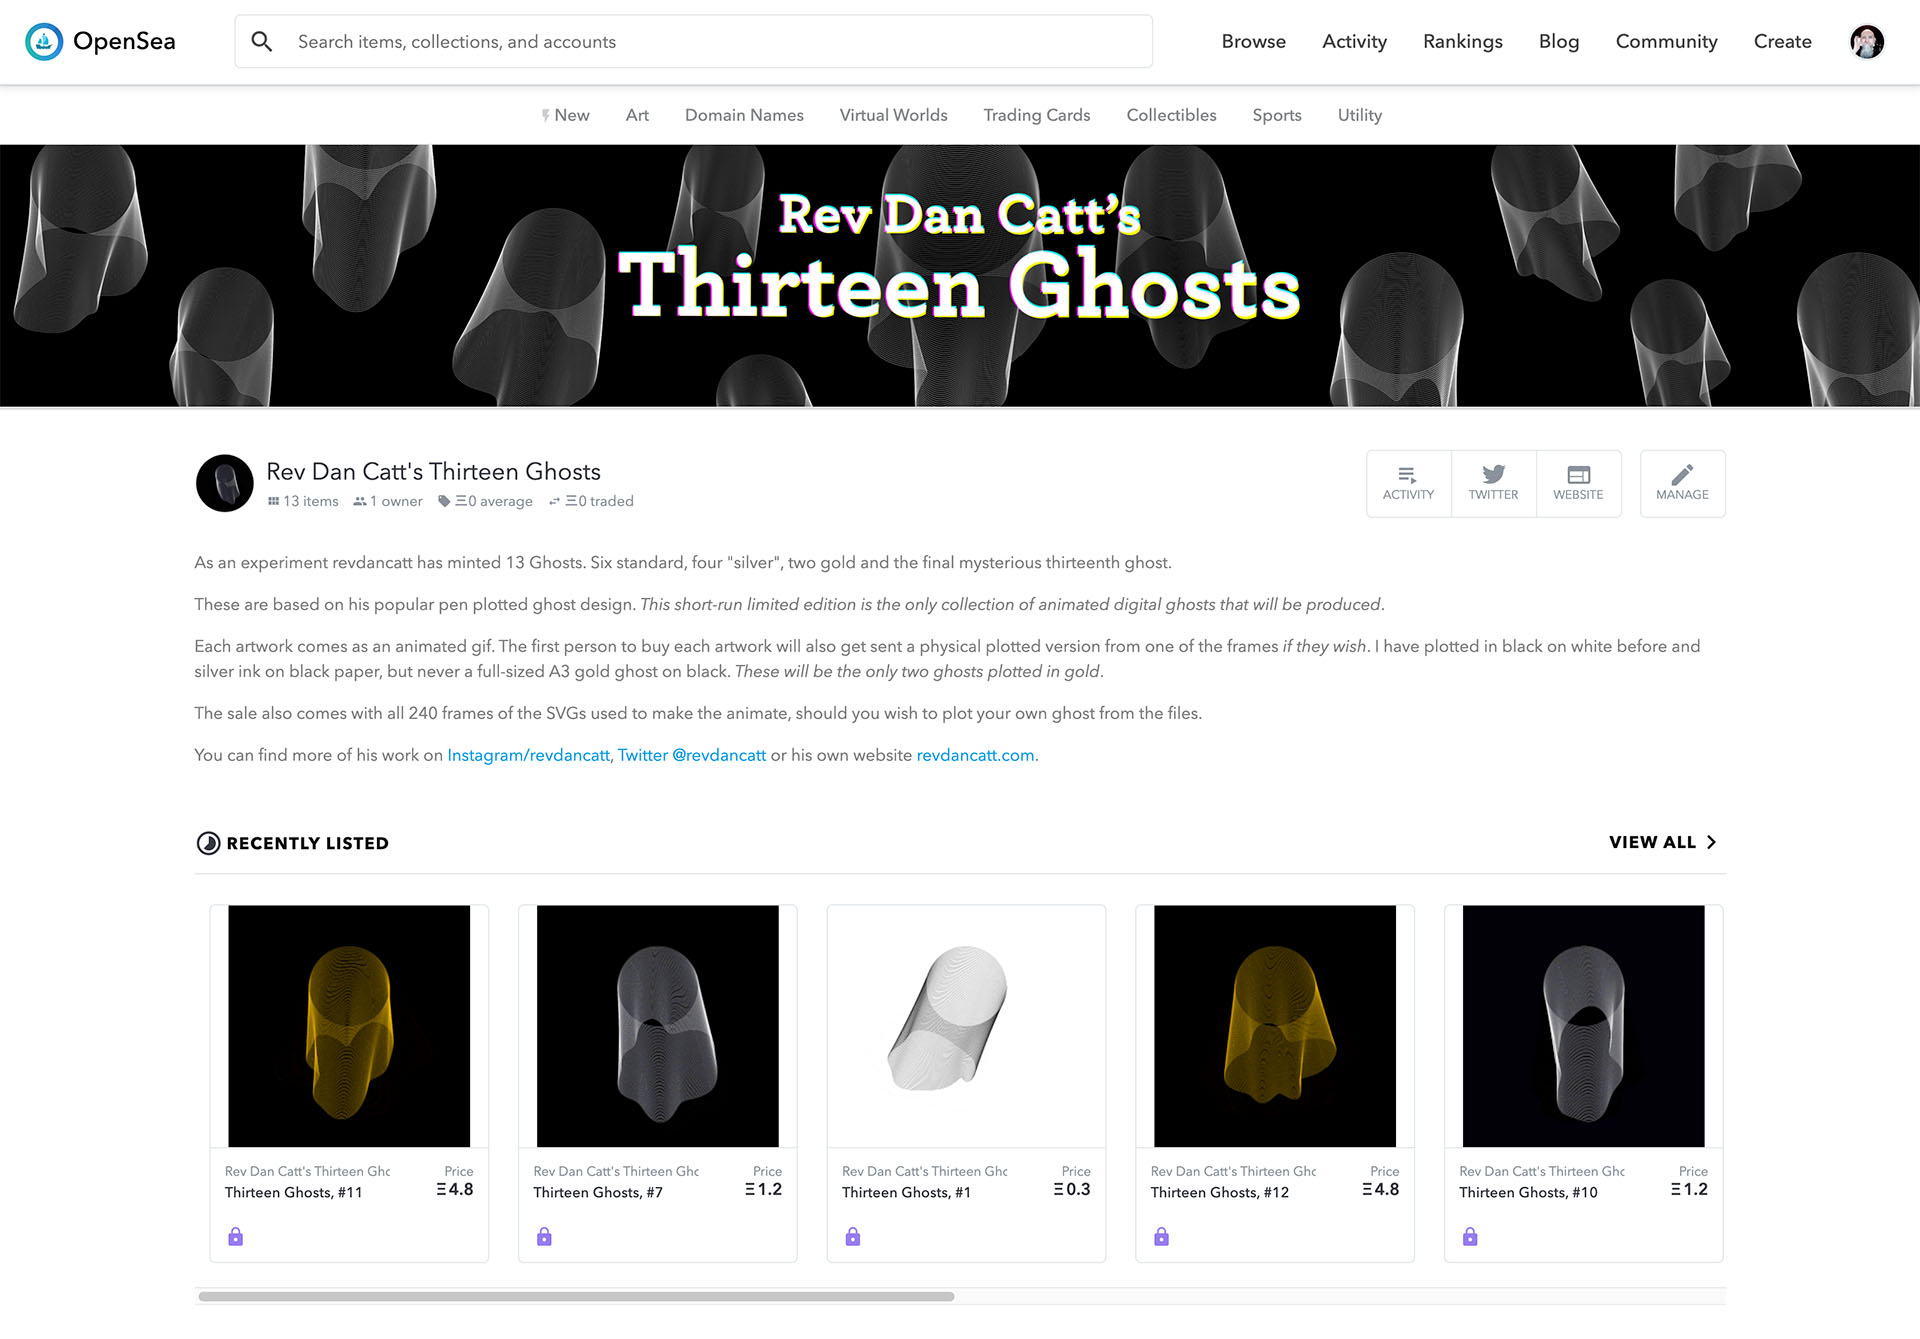 Thirteen Ghosts on OpenSea